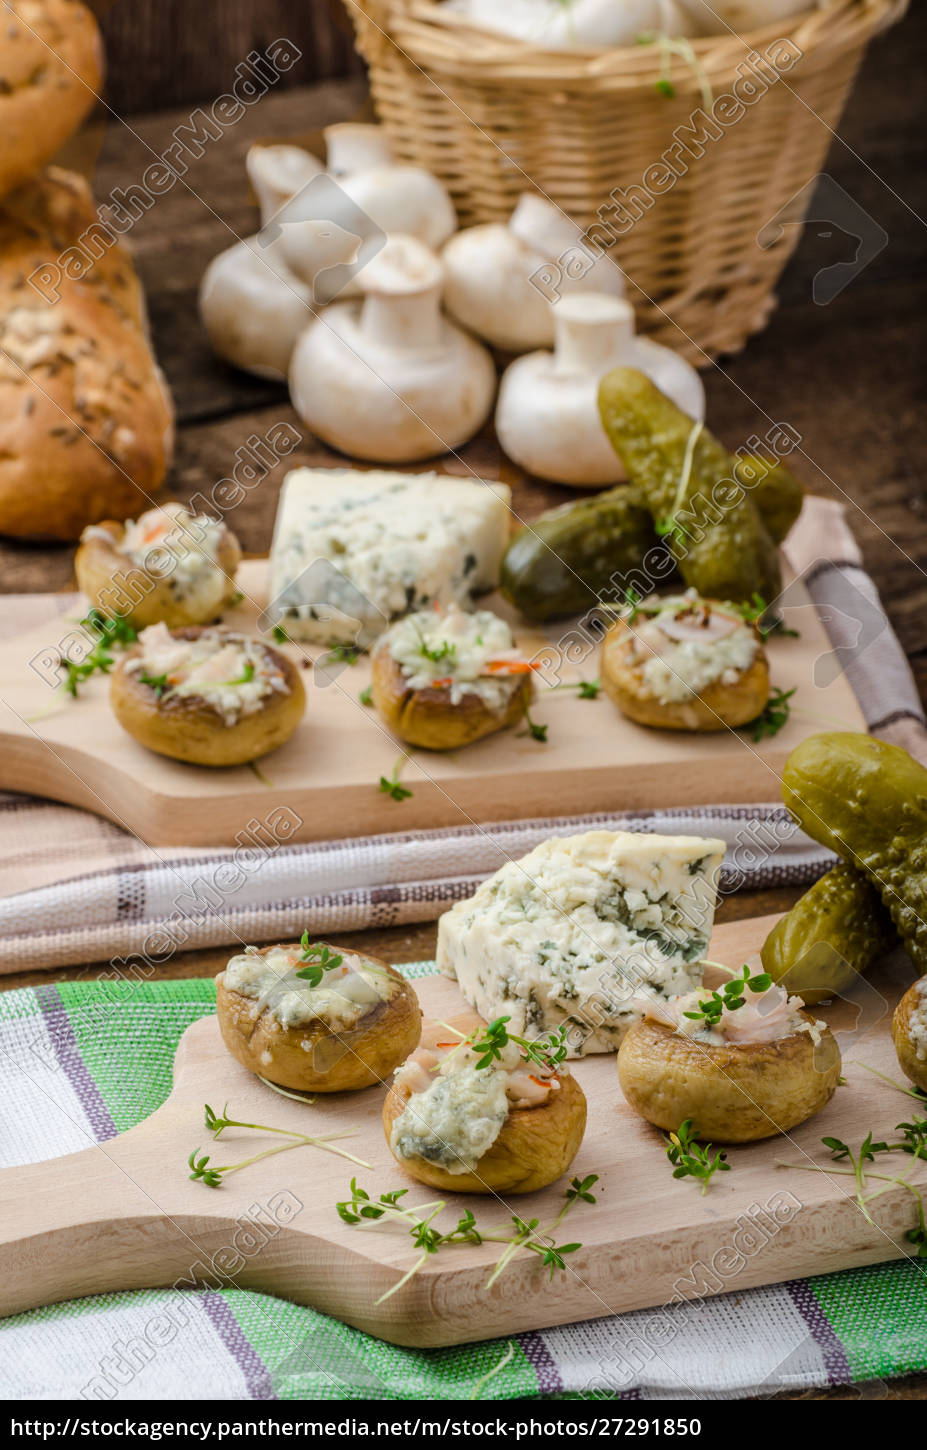 Pilze gefüllt mit Käse - Stock Photo - #27291850 | Bildagentur PantherMedia